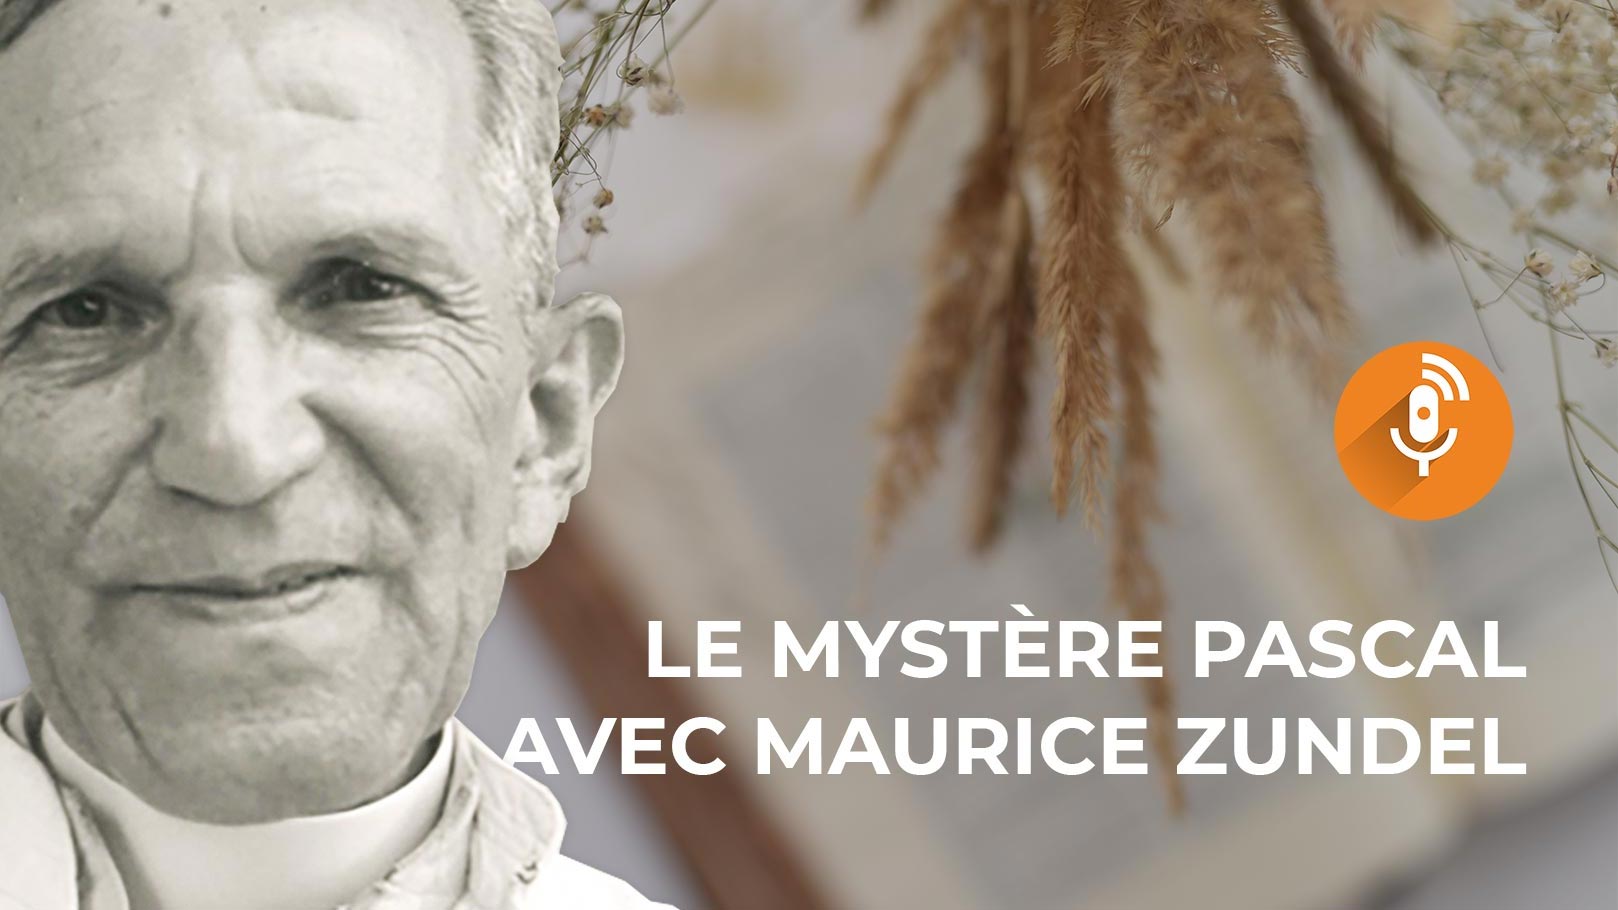 Le Mystère pascal avec Maurice Zundel